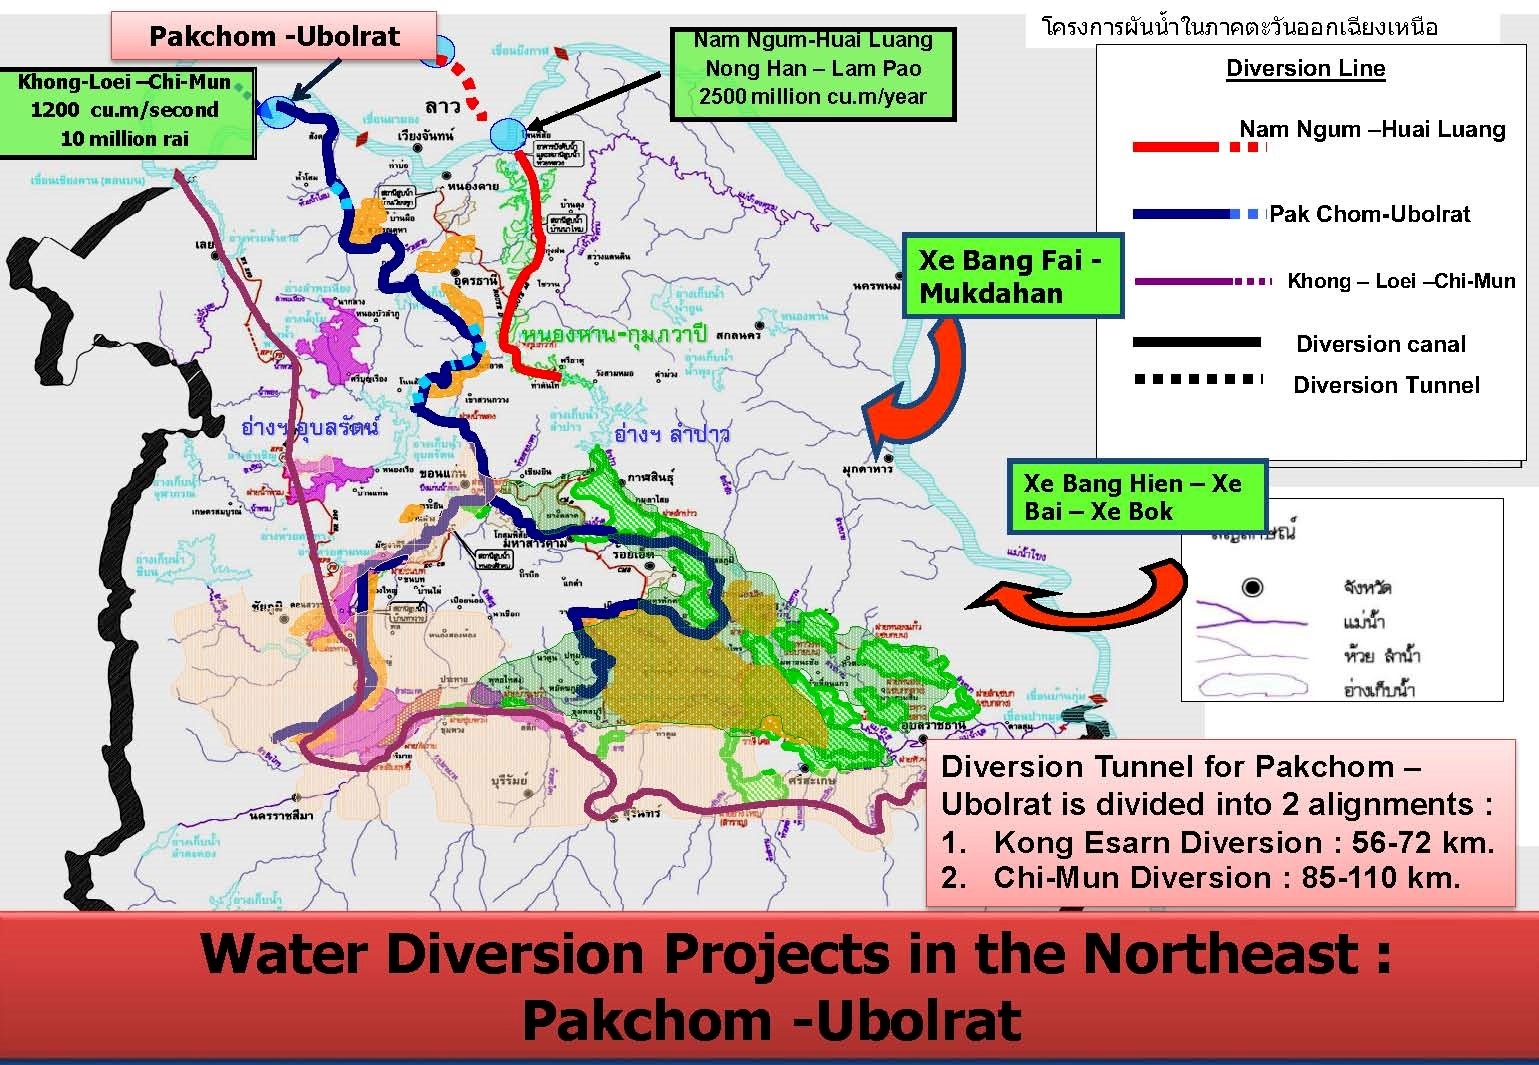 đồng bằng sông cửu long hạn hán, mekong river delta, Dự án Khong-Loei-Chi-Mun, water diversion projet in the Northeast: Packchom- Ubolrat